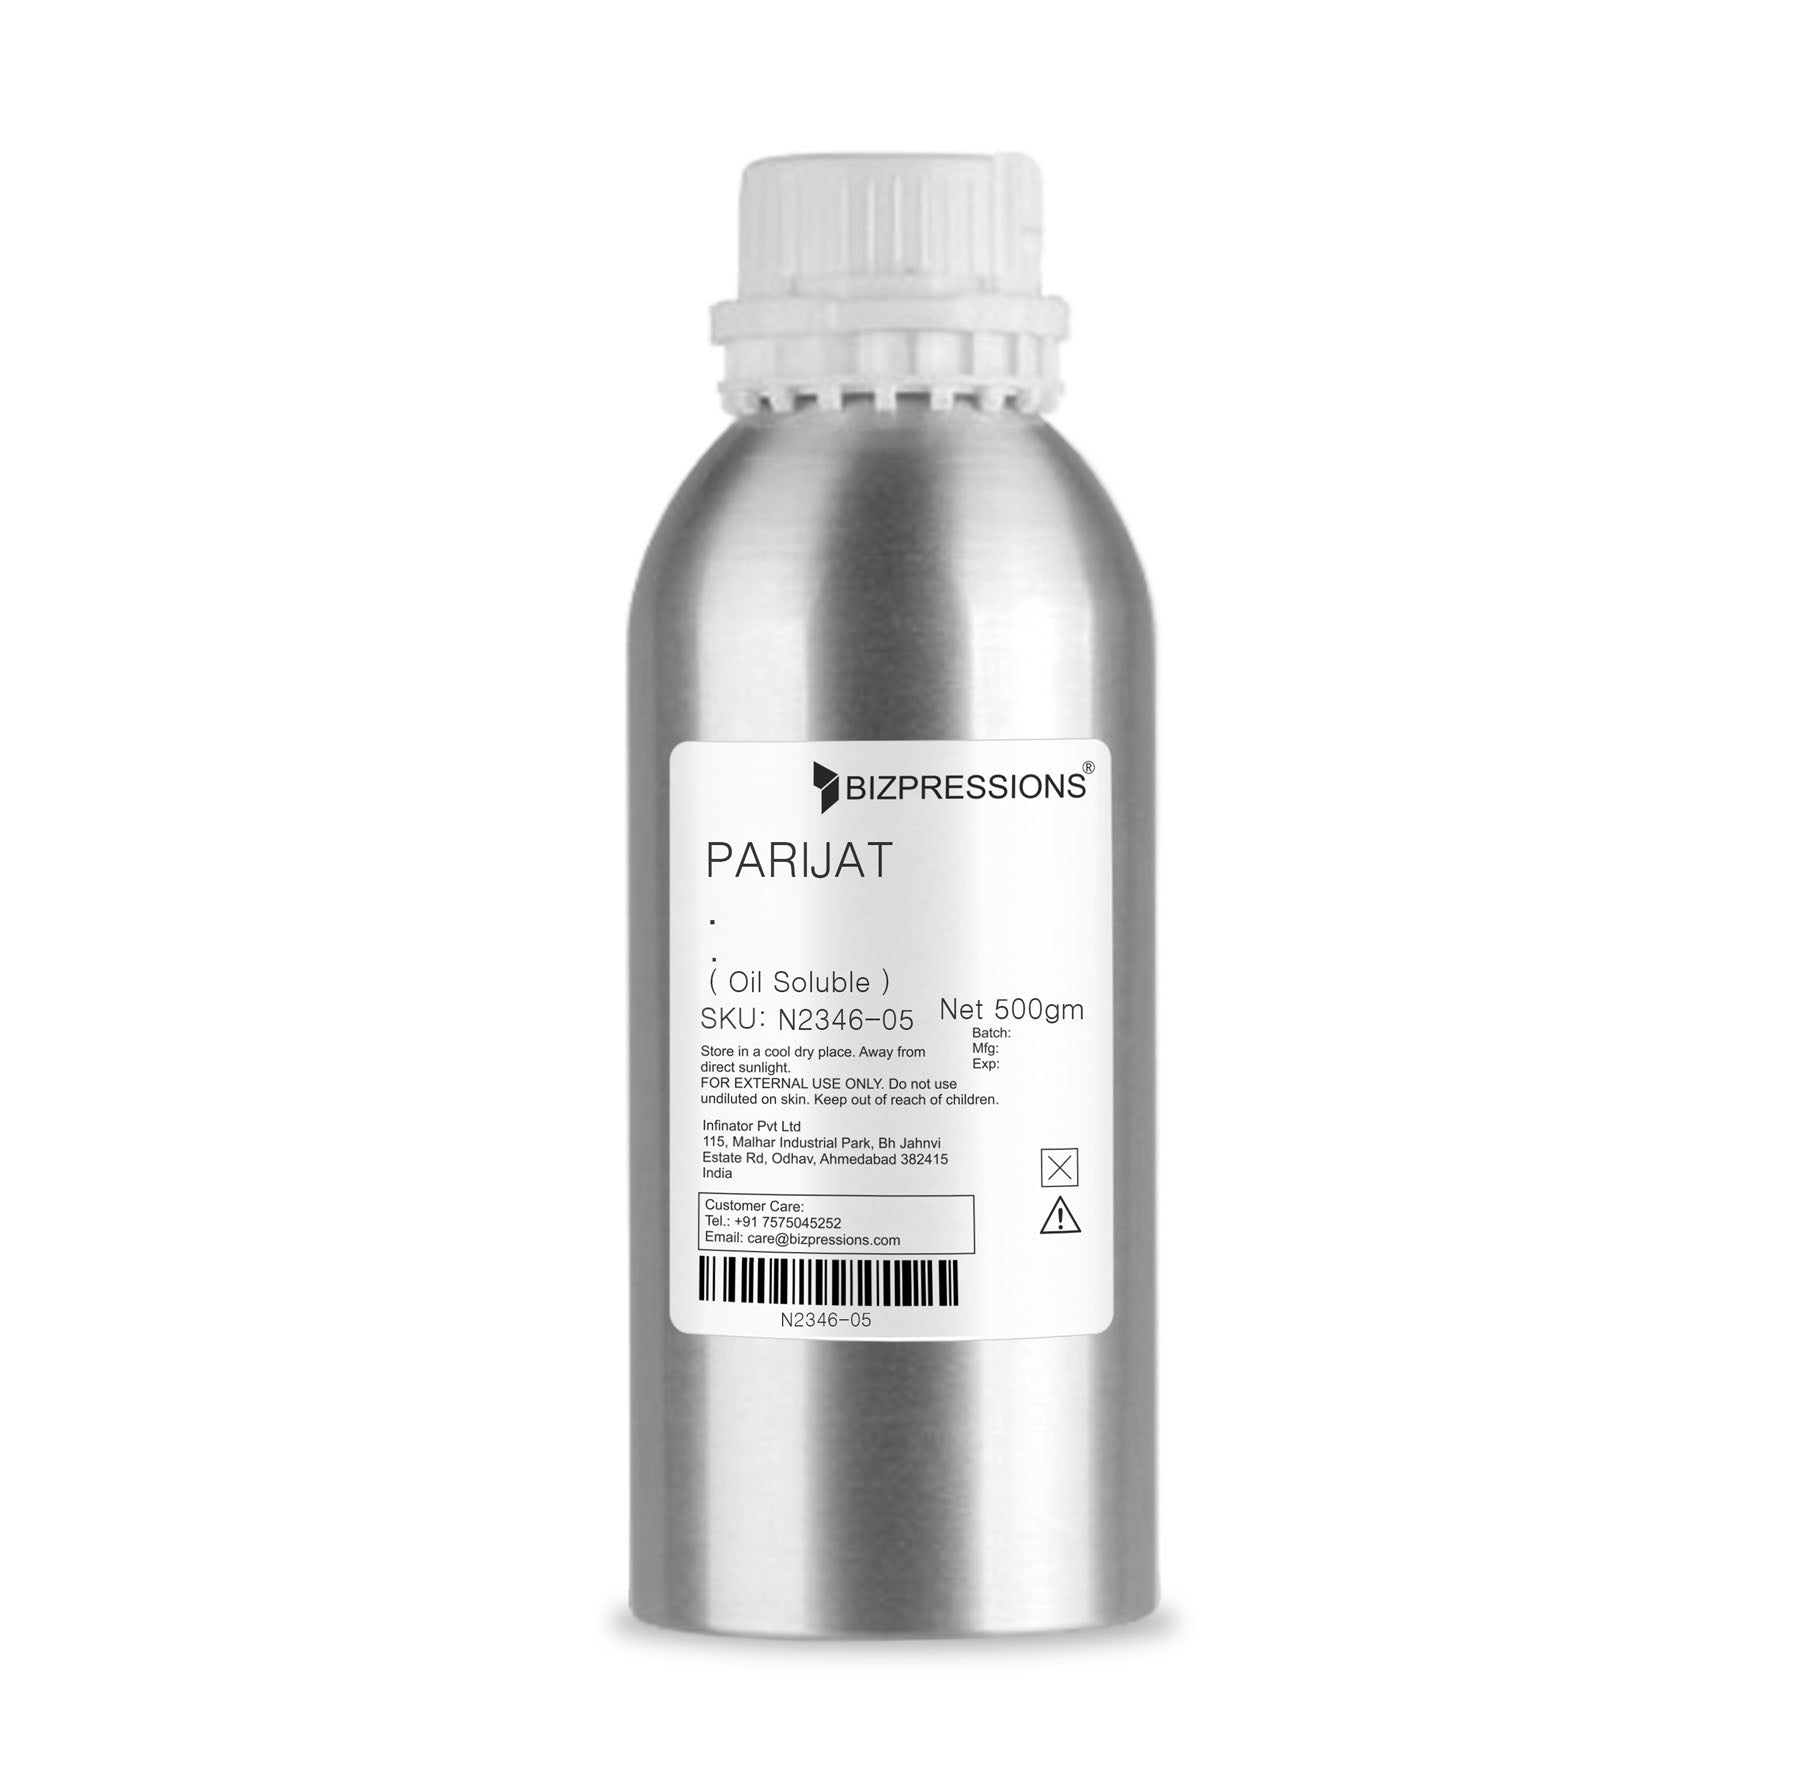 PARIJAT - Fragrance ( Oil Soluble ) - 500 gm